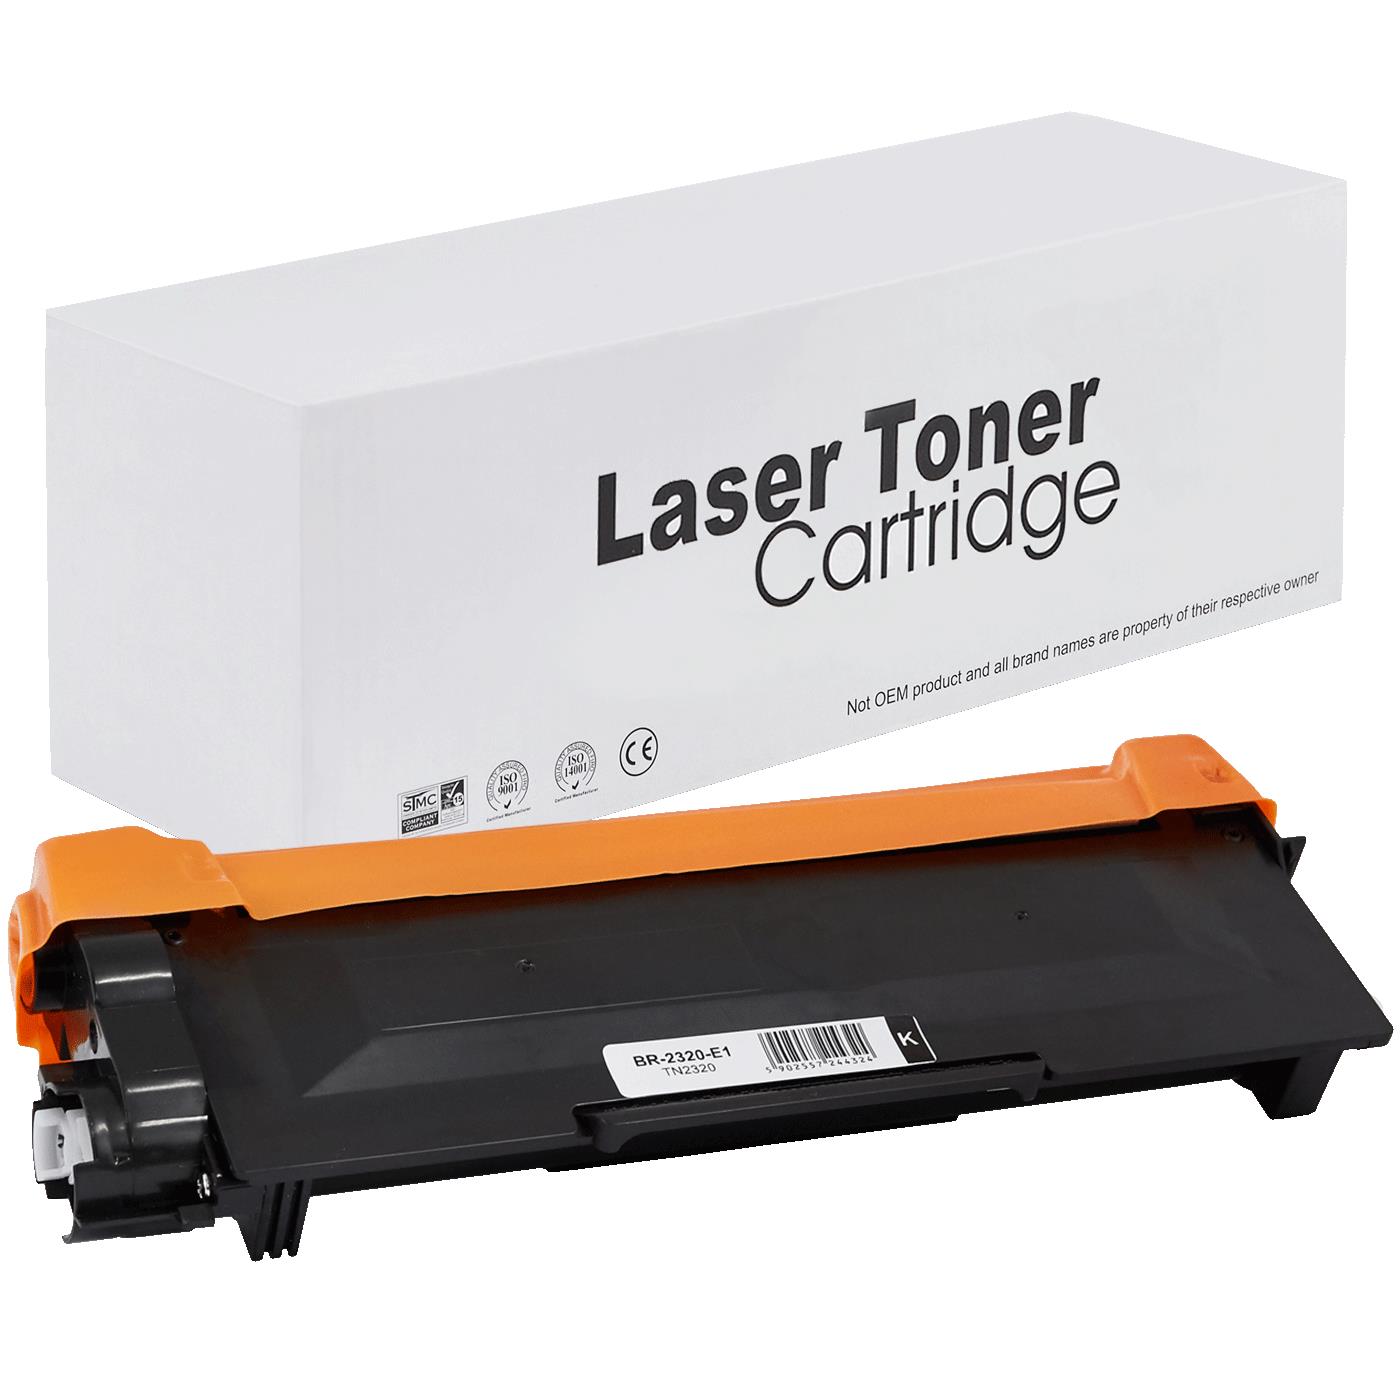 съвместима тонер касета за принтери и печатащи устройства на Brother HL-L 2300 SERIES Toner BR-2320 | TN2320 / TN2310 / TN-2320. Ниски цени, прецизно изпълнение, високо качество.